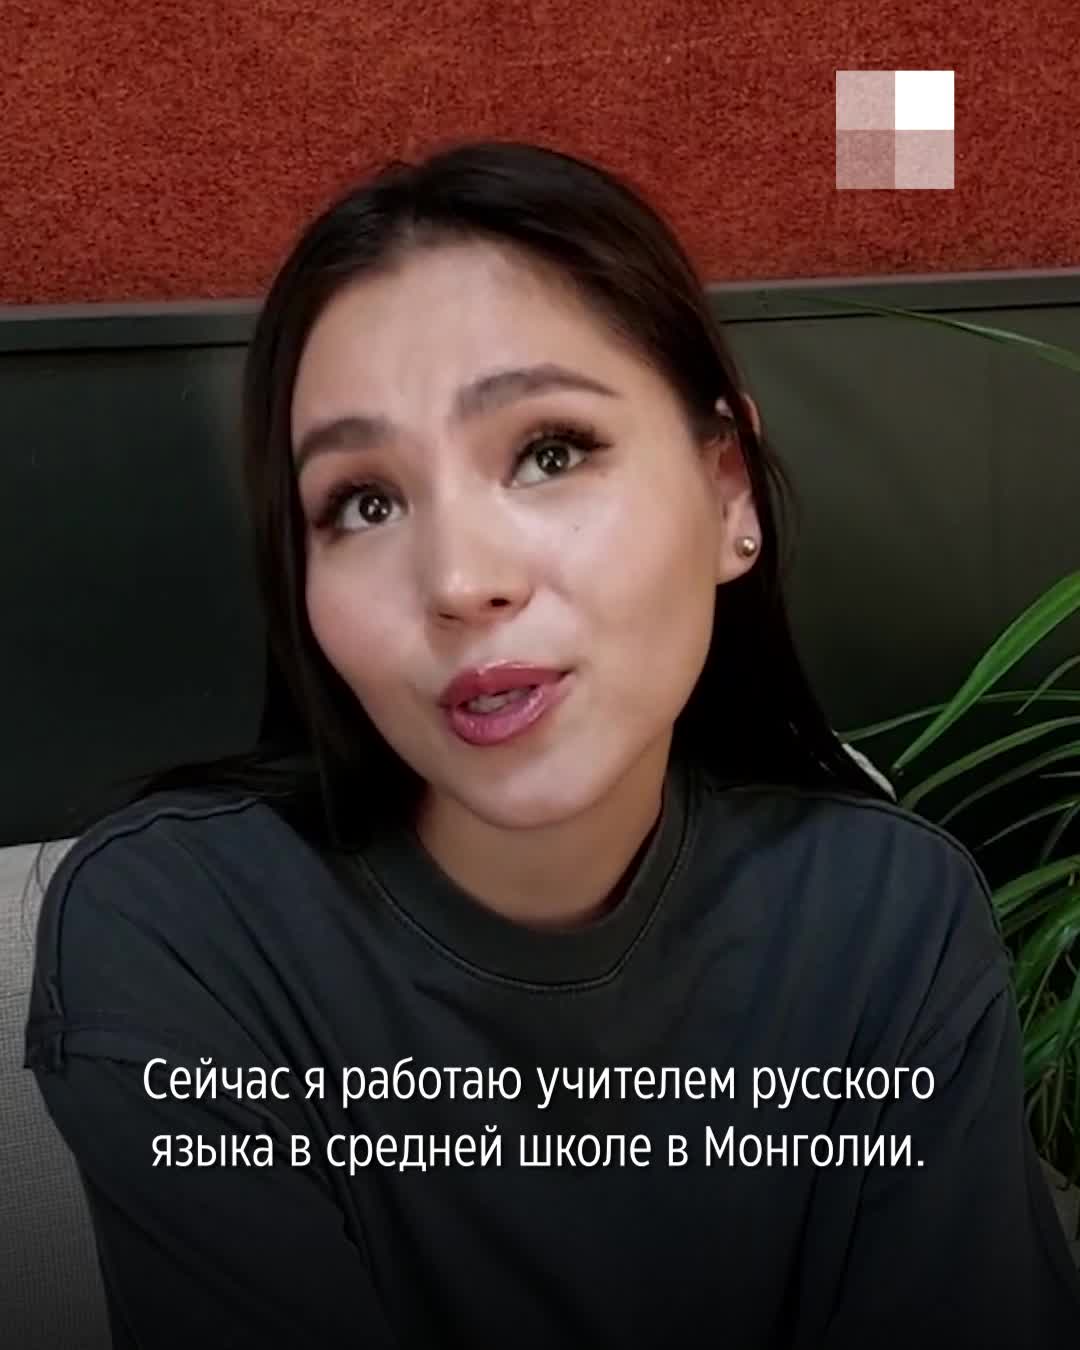 Смотрите по-русски: Яндекс запустил закадровый перевод видео